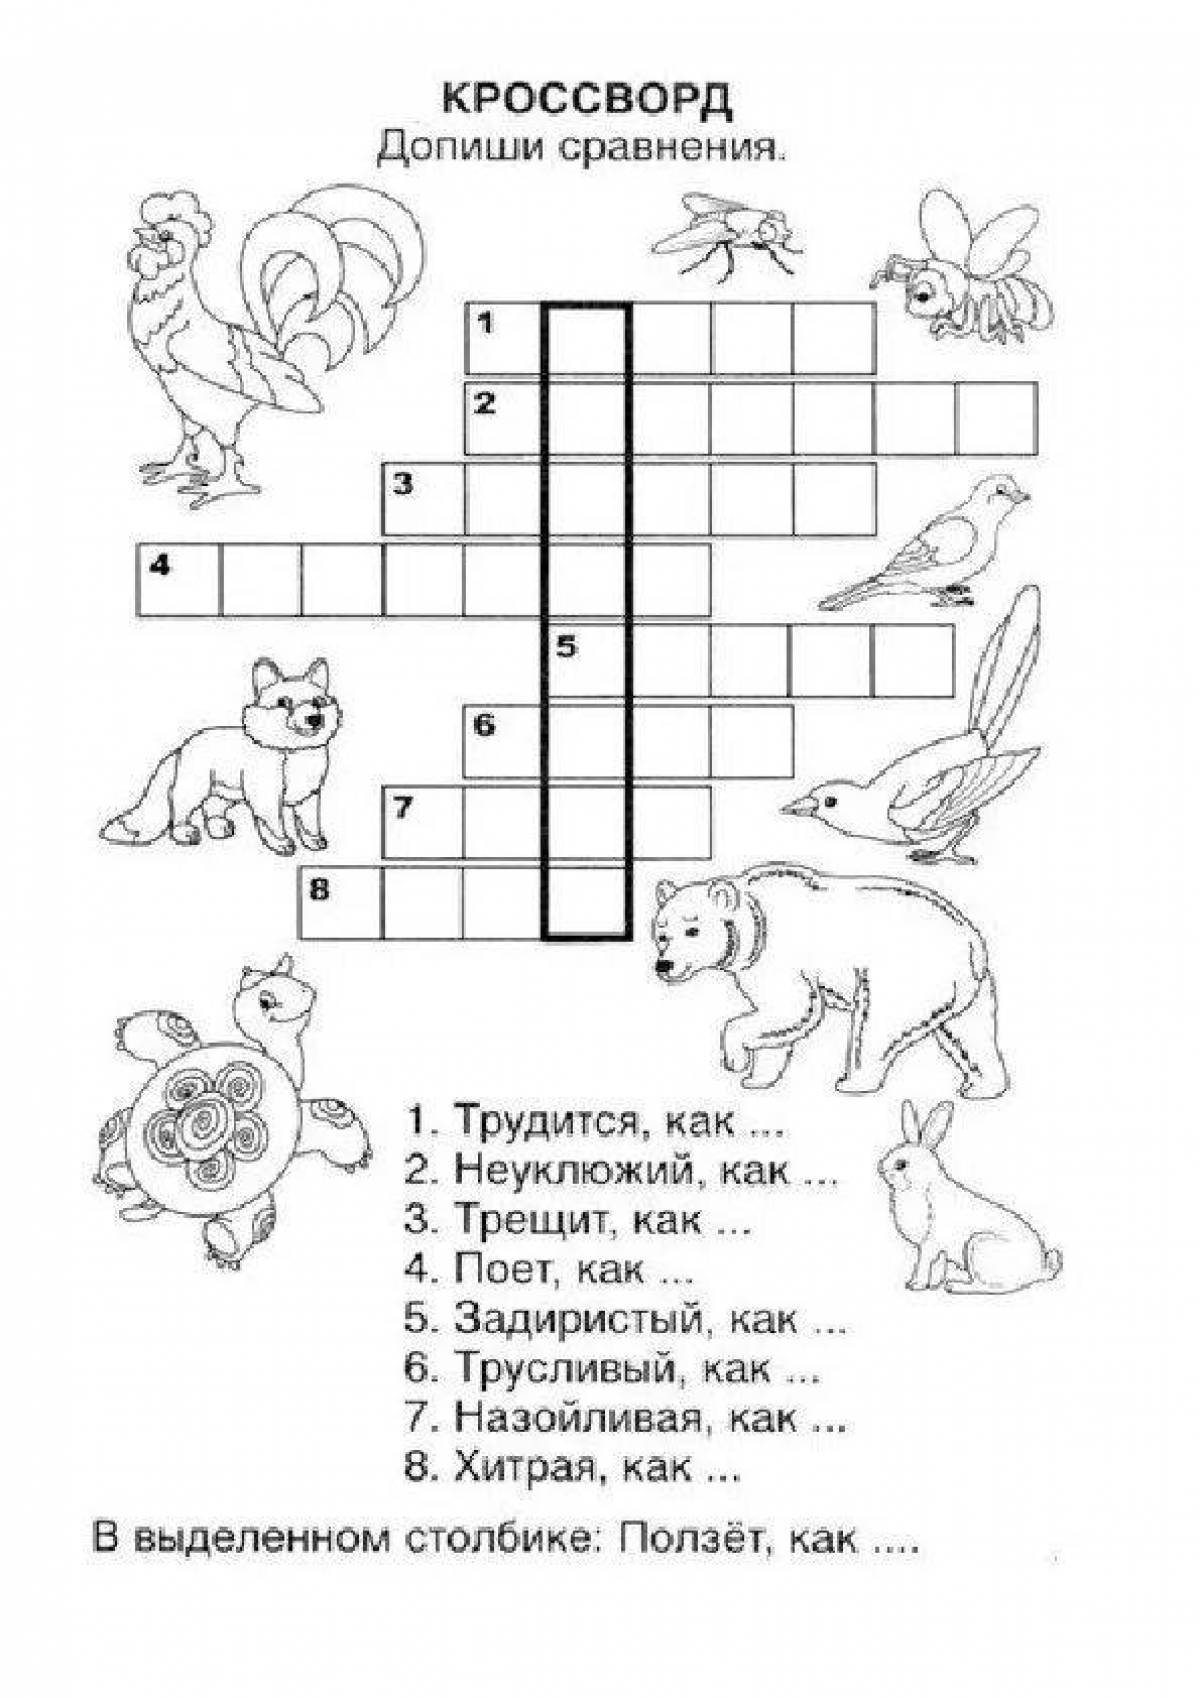 Crossword #13